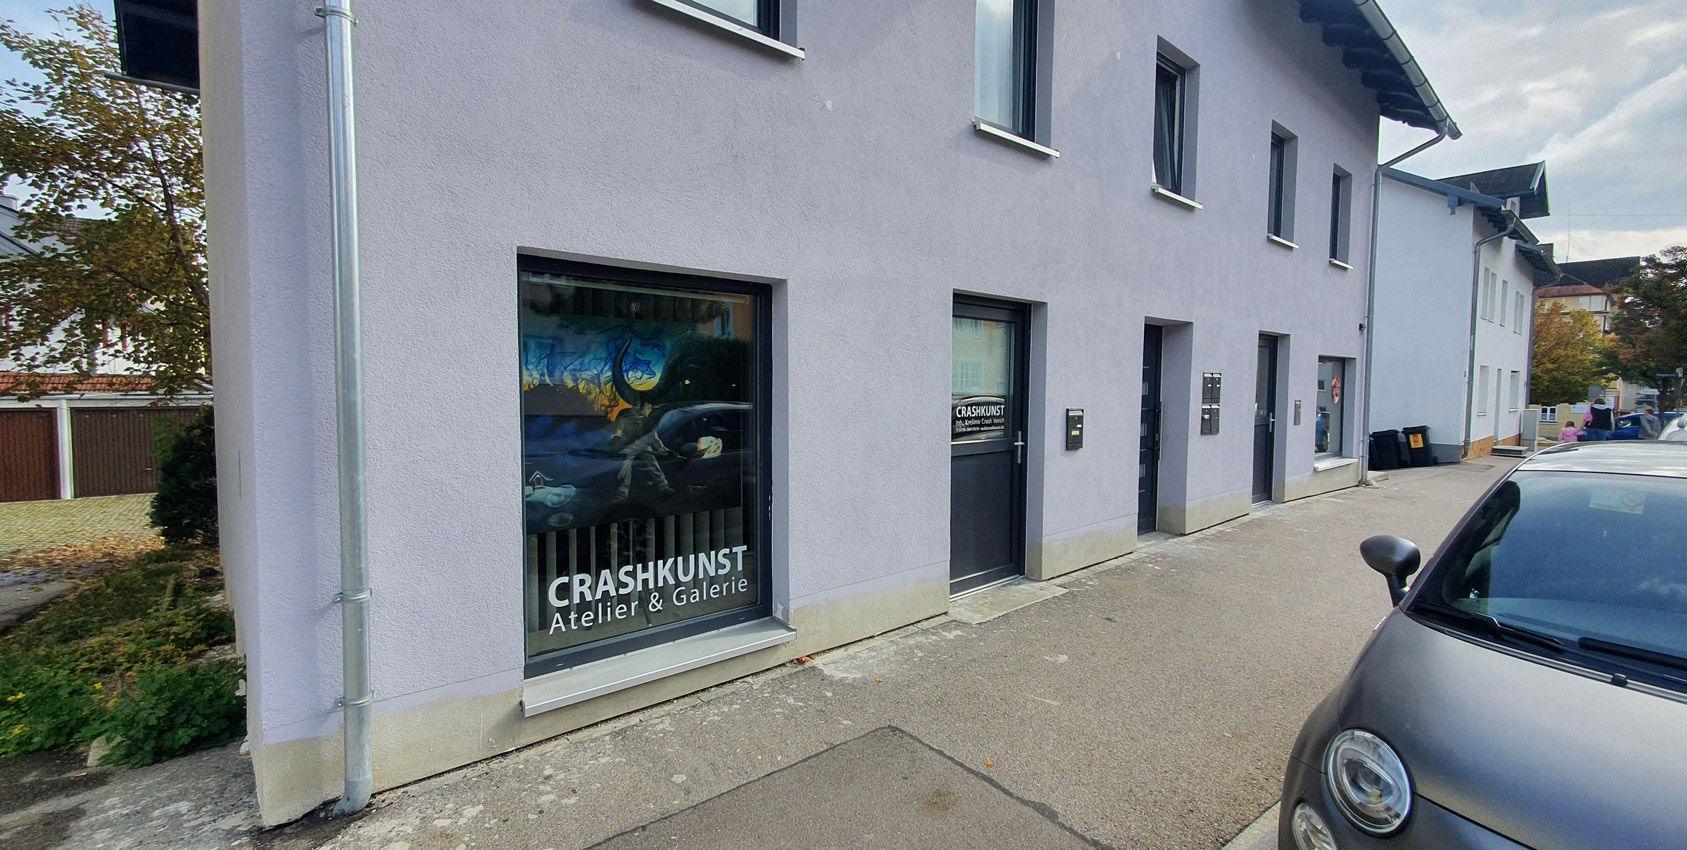 CRASHKUNST Atelier & Galerie in Kempten, Kottern